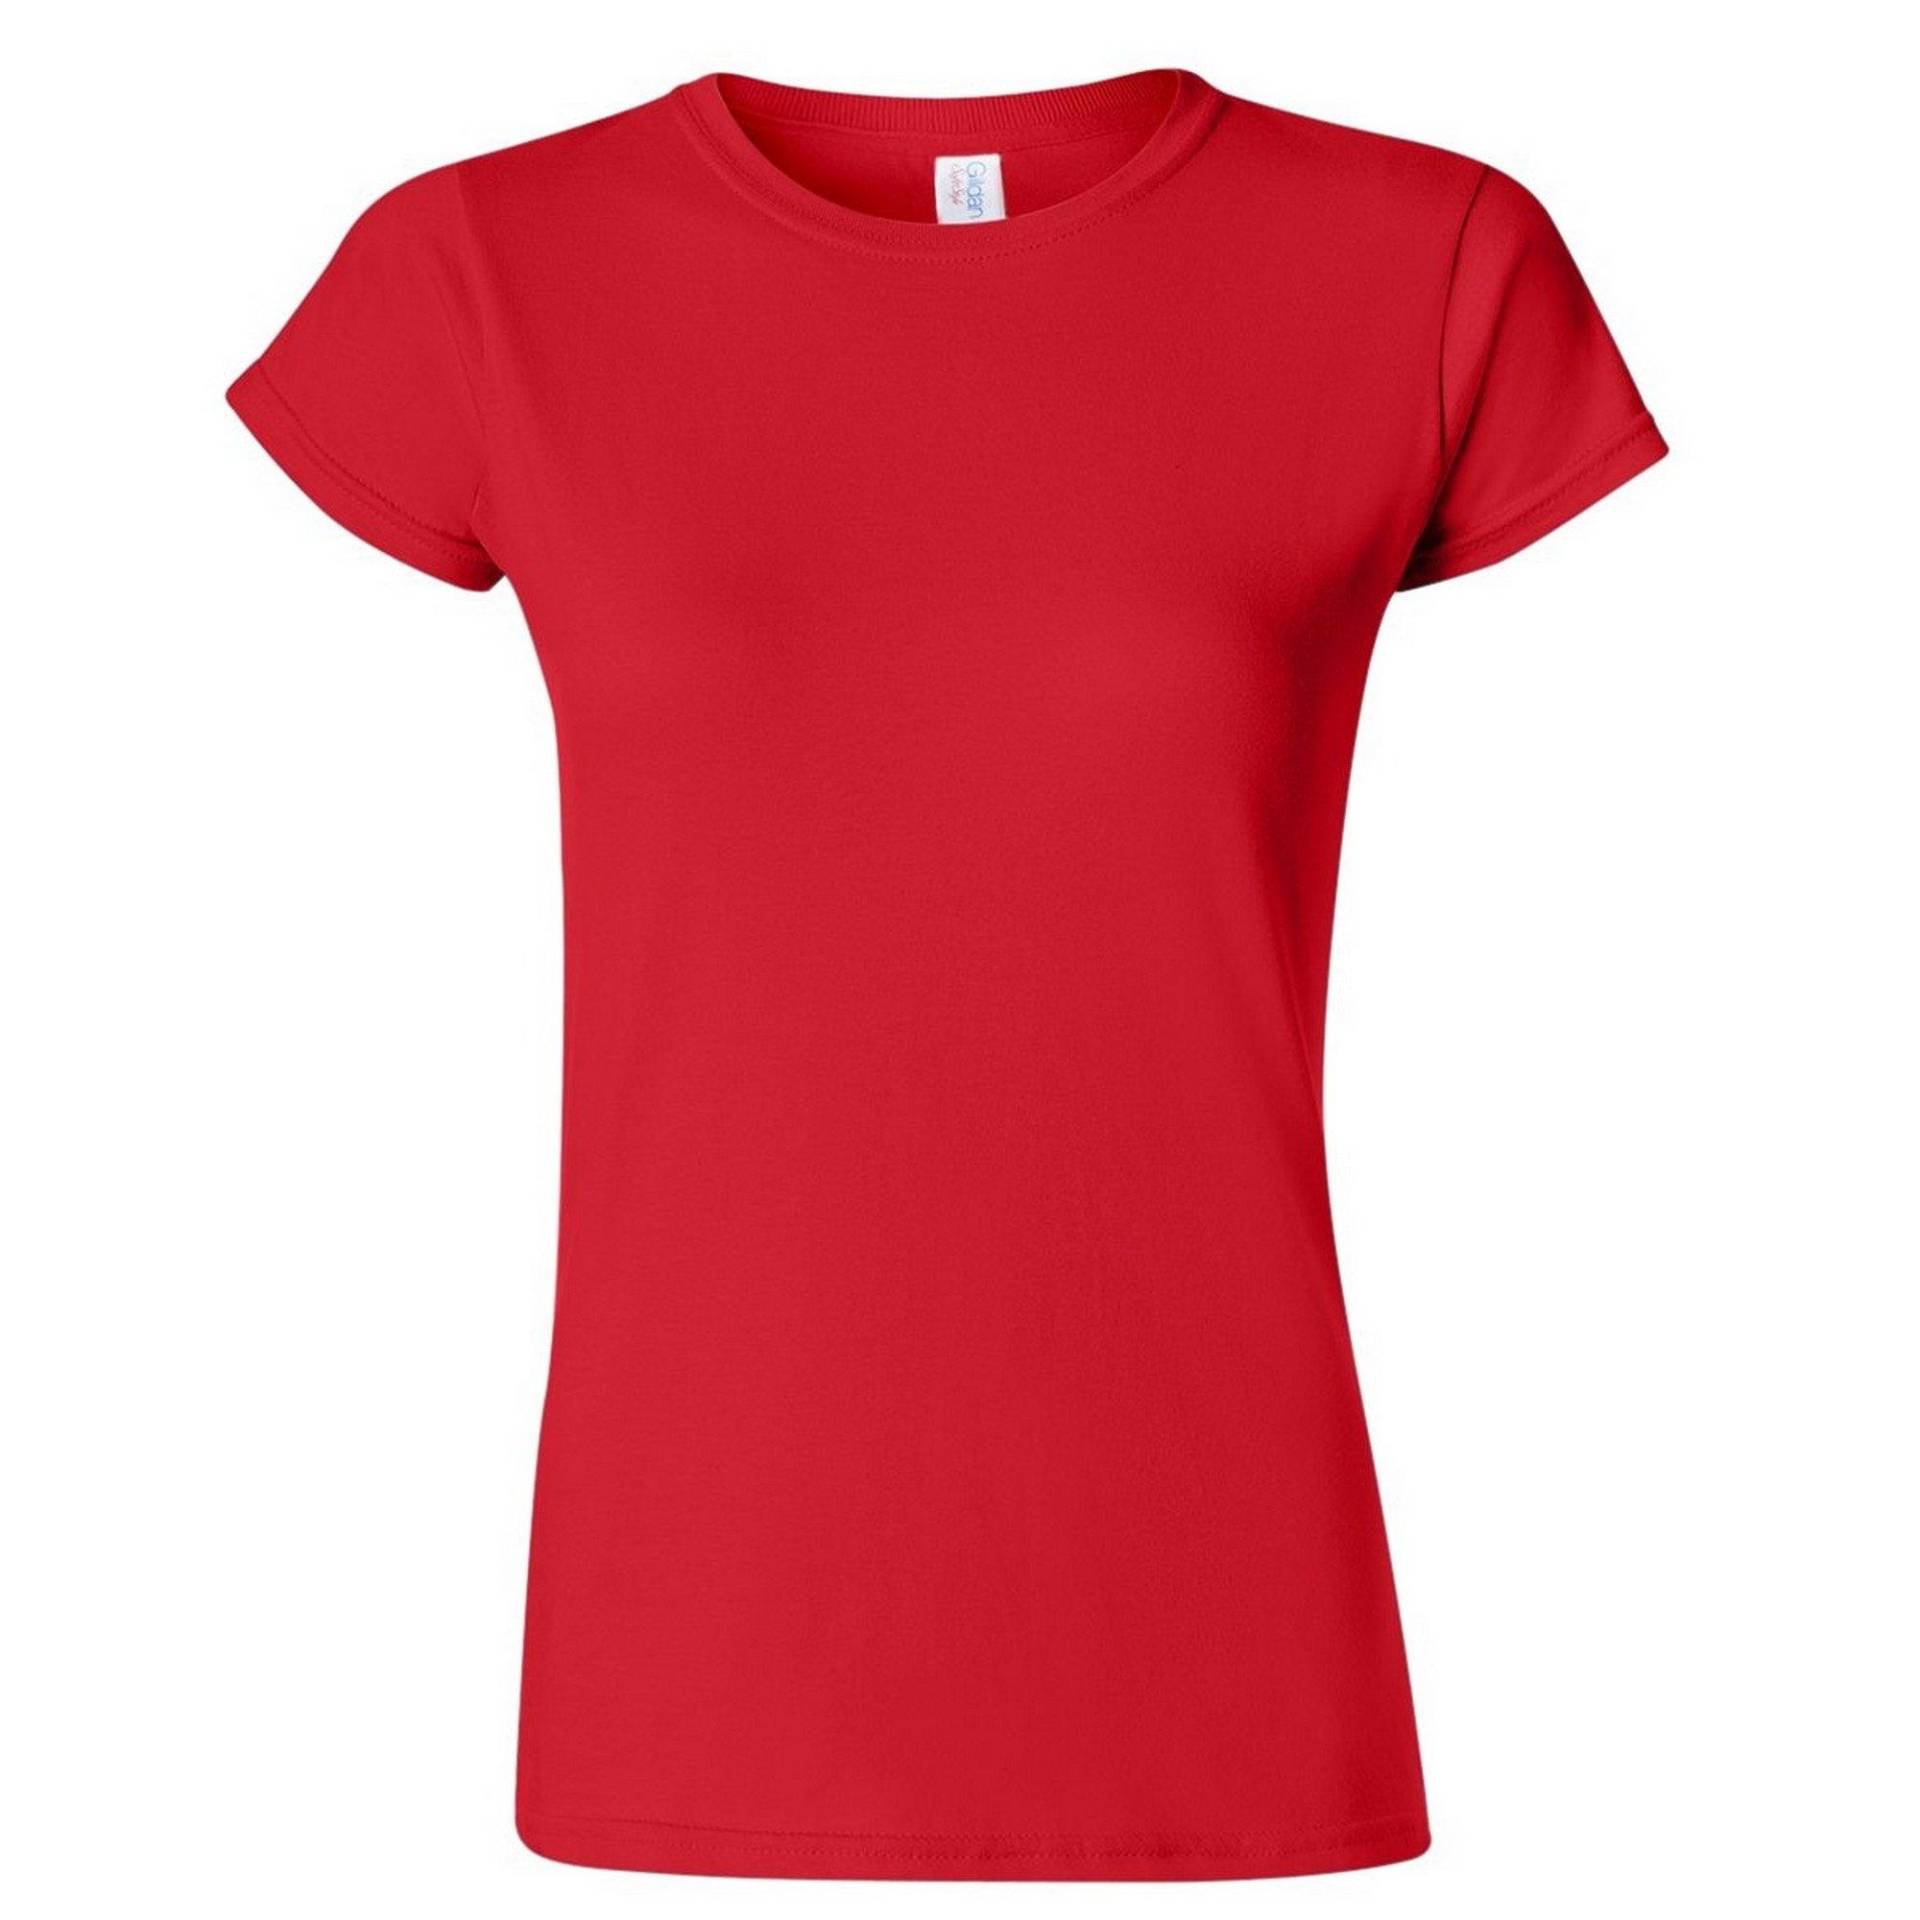 Soft Style Kurzarm Tshirt Damen Rot Bunt XXL von Gildan